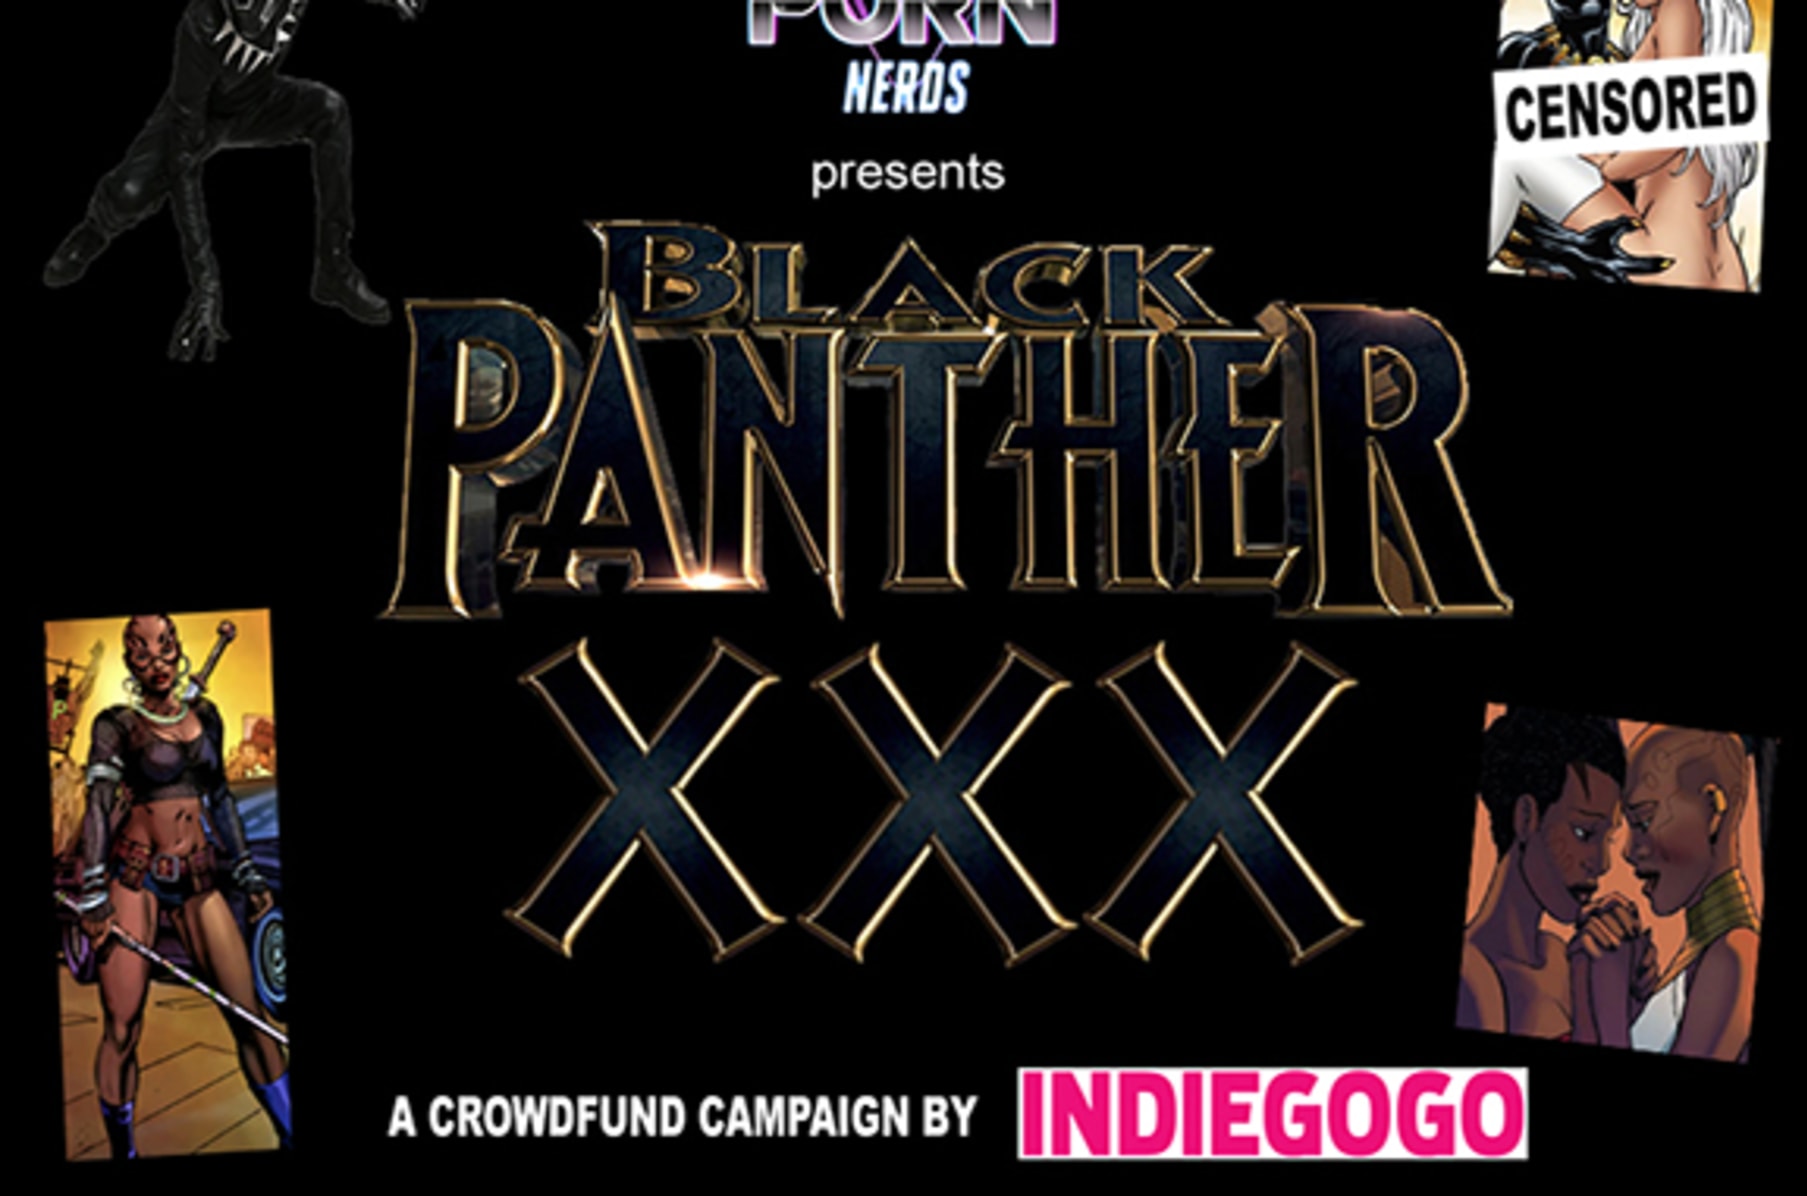 Black Superhero Porn - BLACK PANTHER XXX: An Adult Superhero Parody | Indiegogo